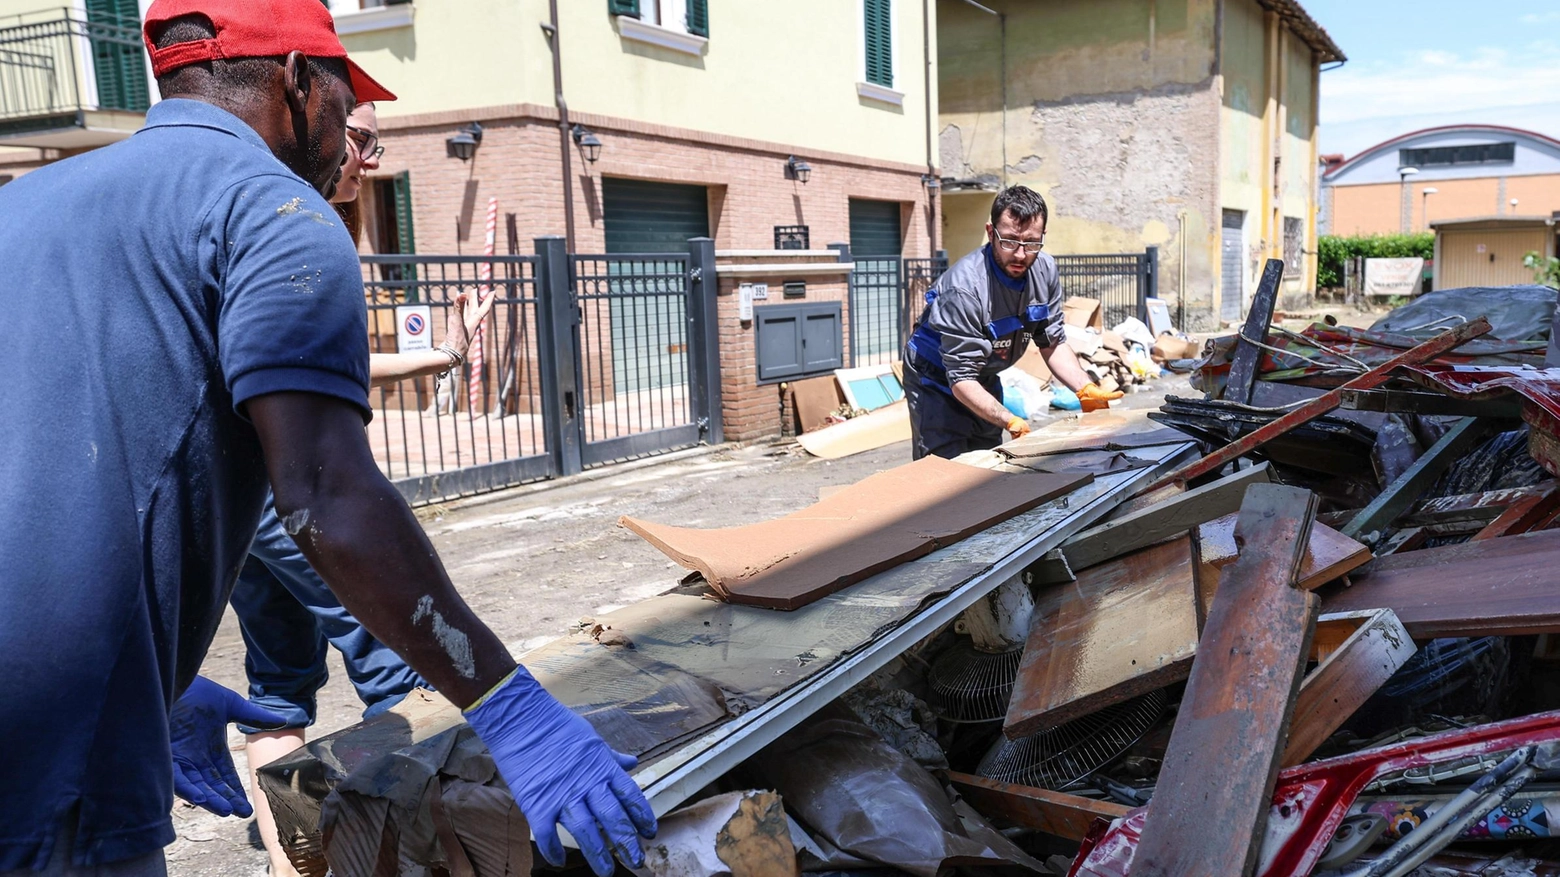 Maltempo e danni anche a Savignano, nel Modenese